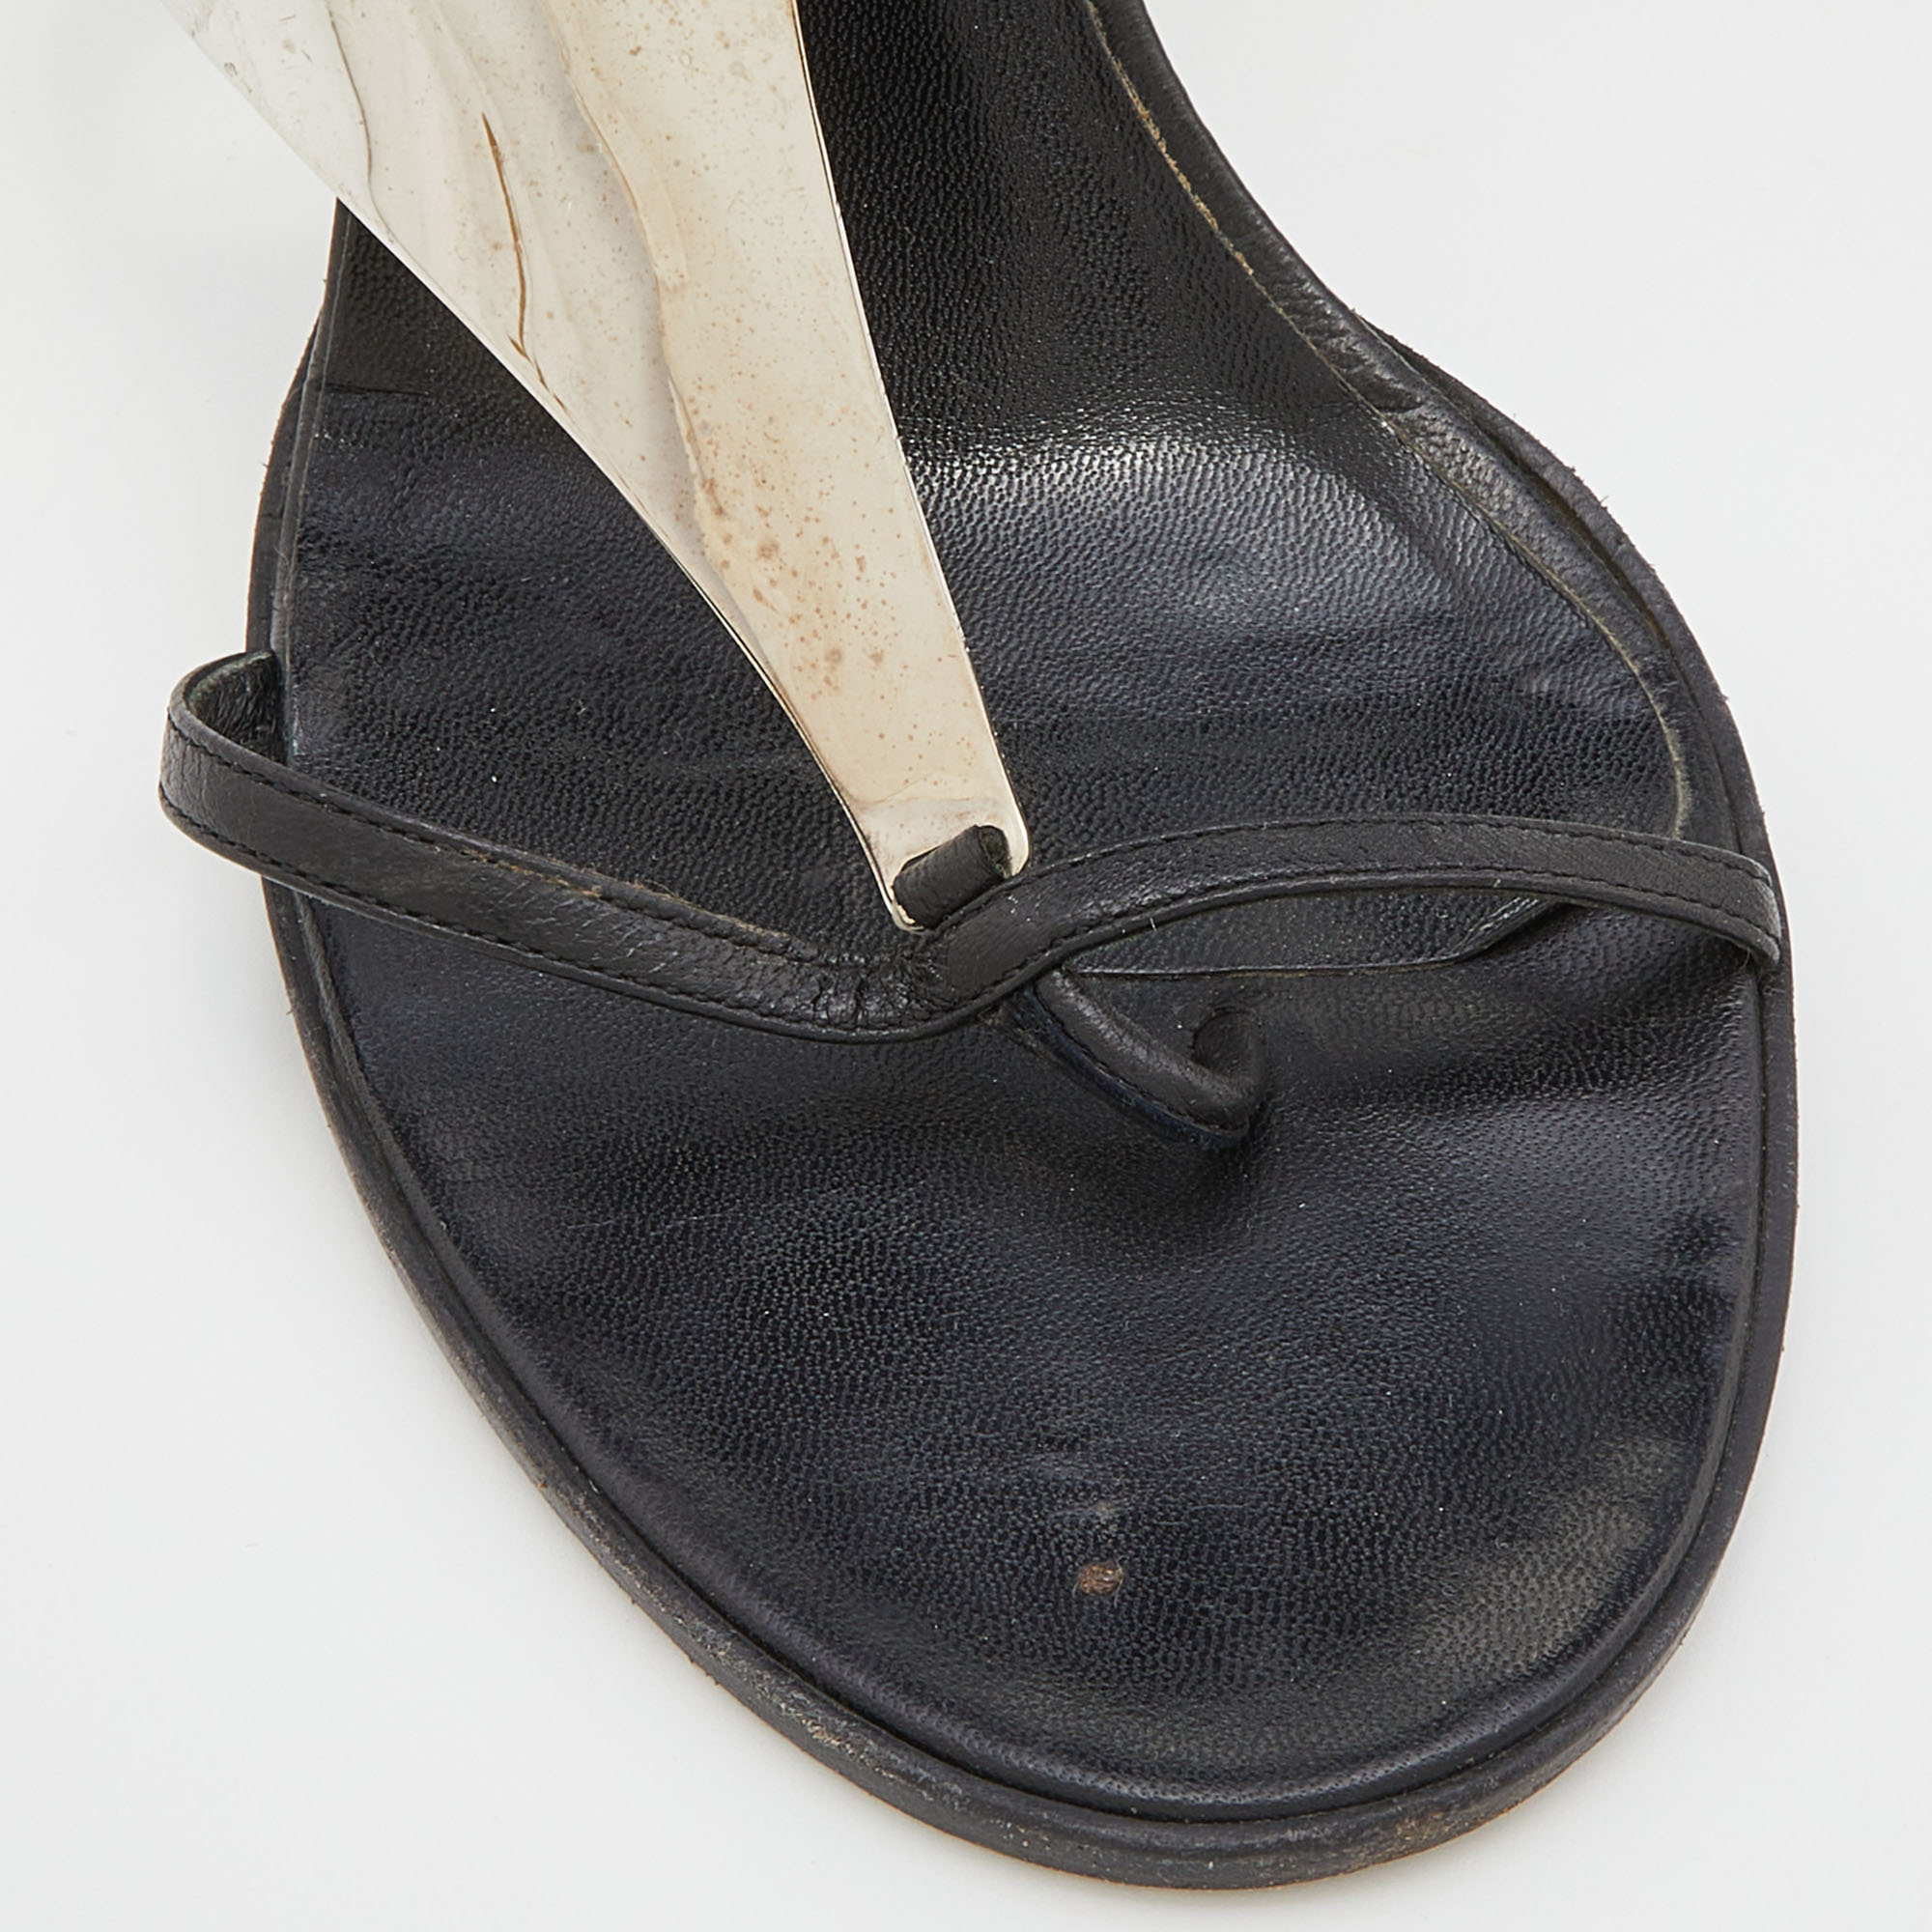 Dior Black Leather Metal Embellished Ankle Strap Sandals Size 39